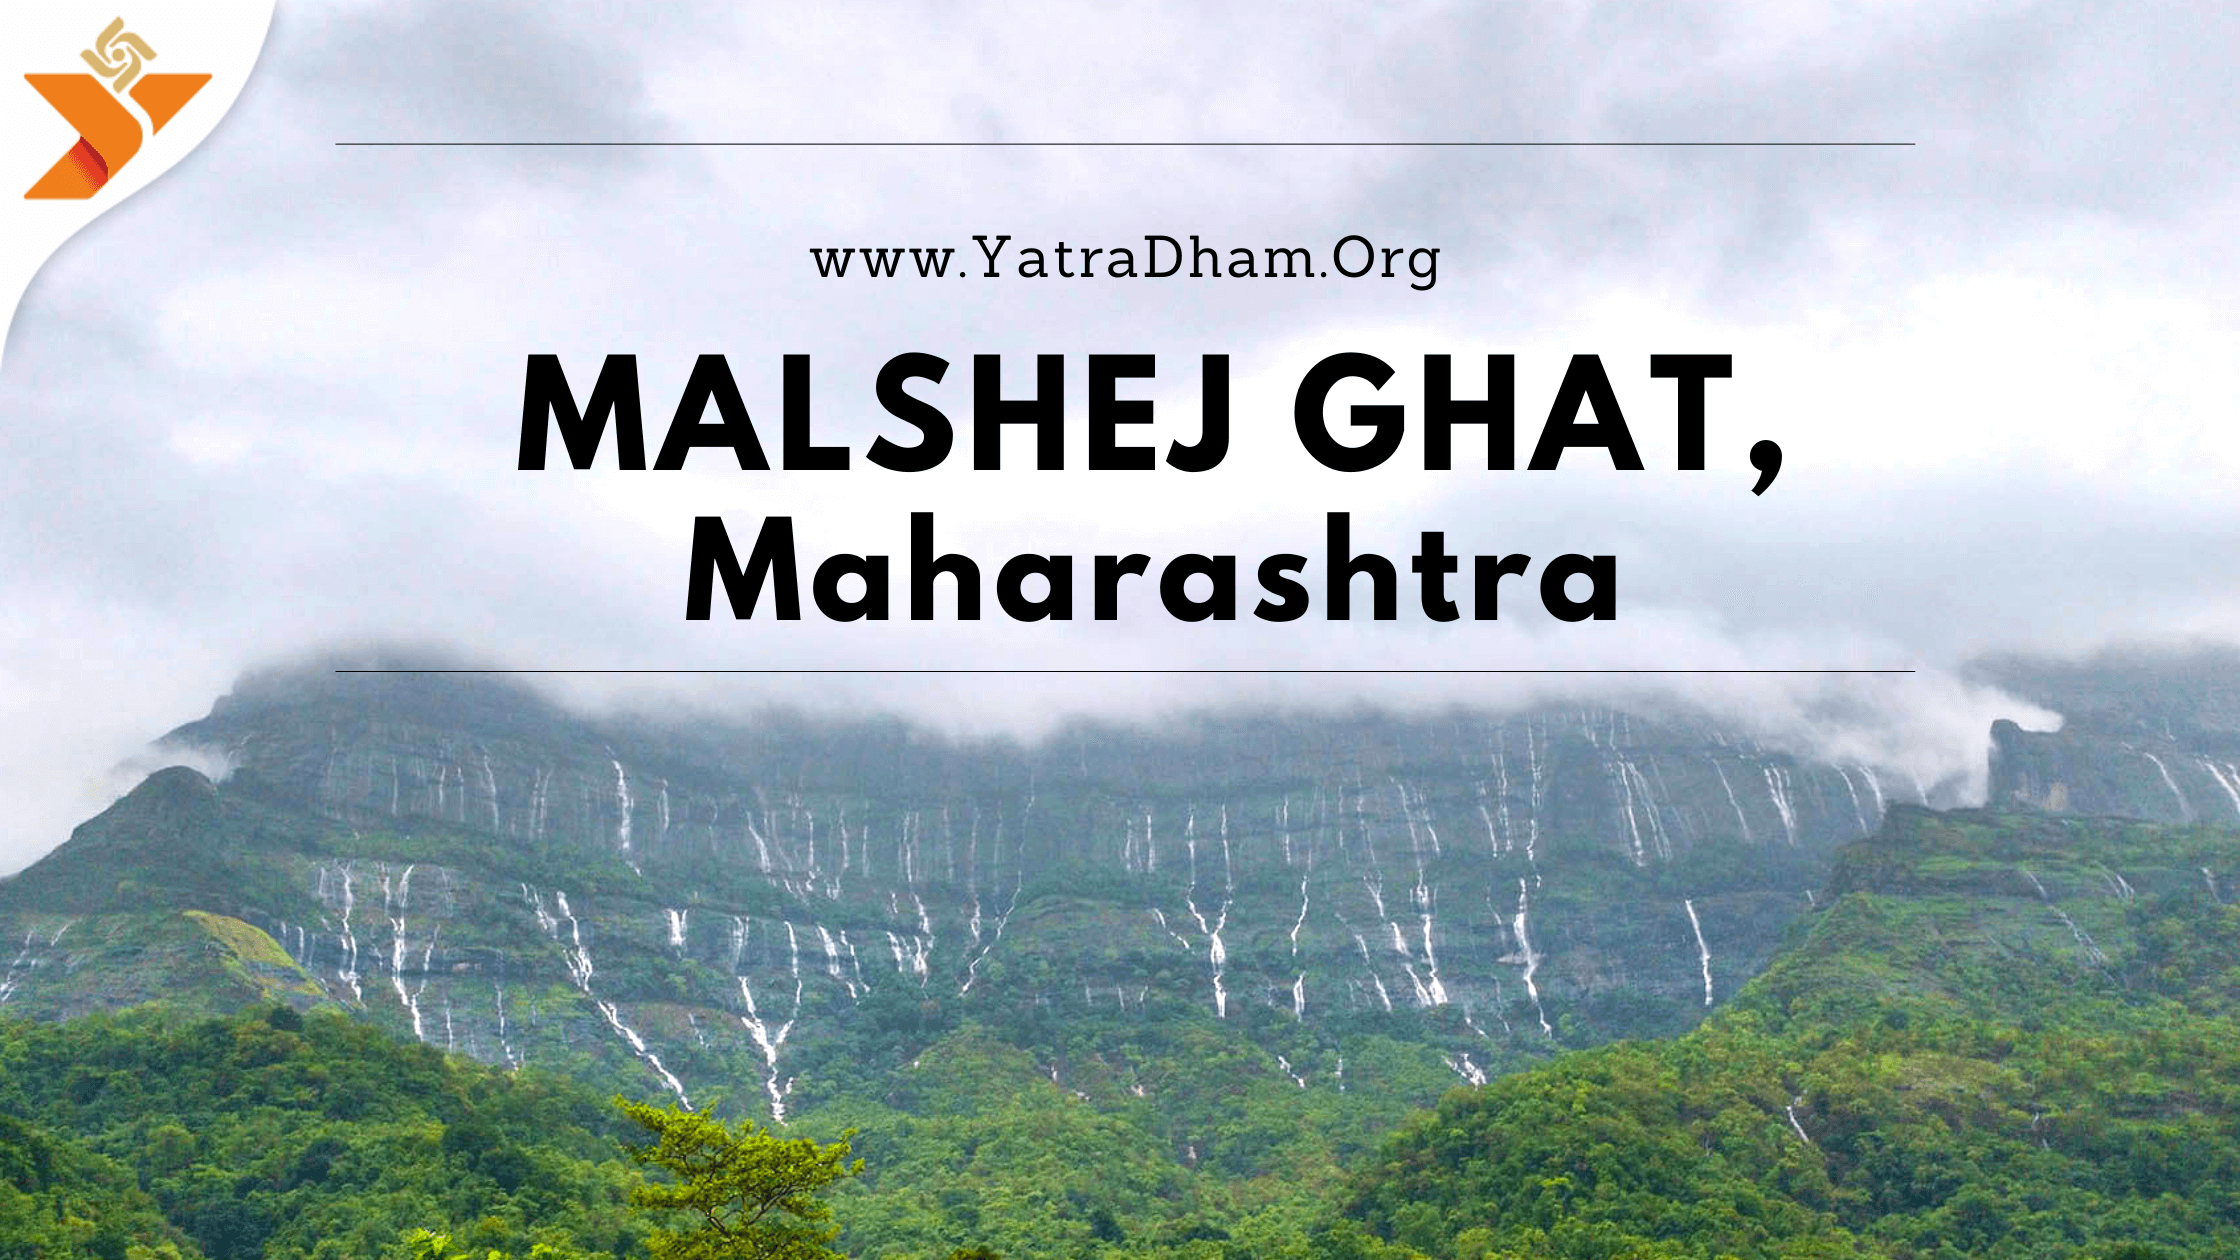 Malshej Ghat, Mahabharat